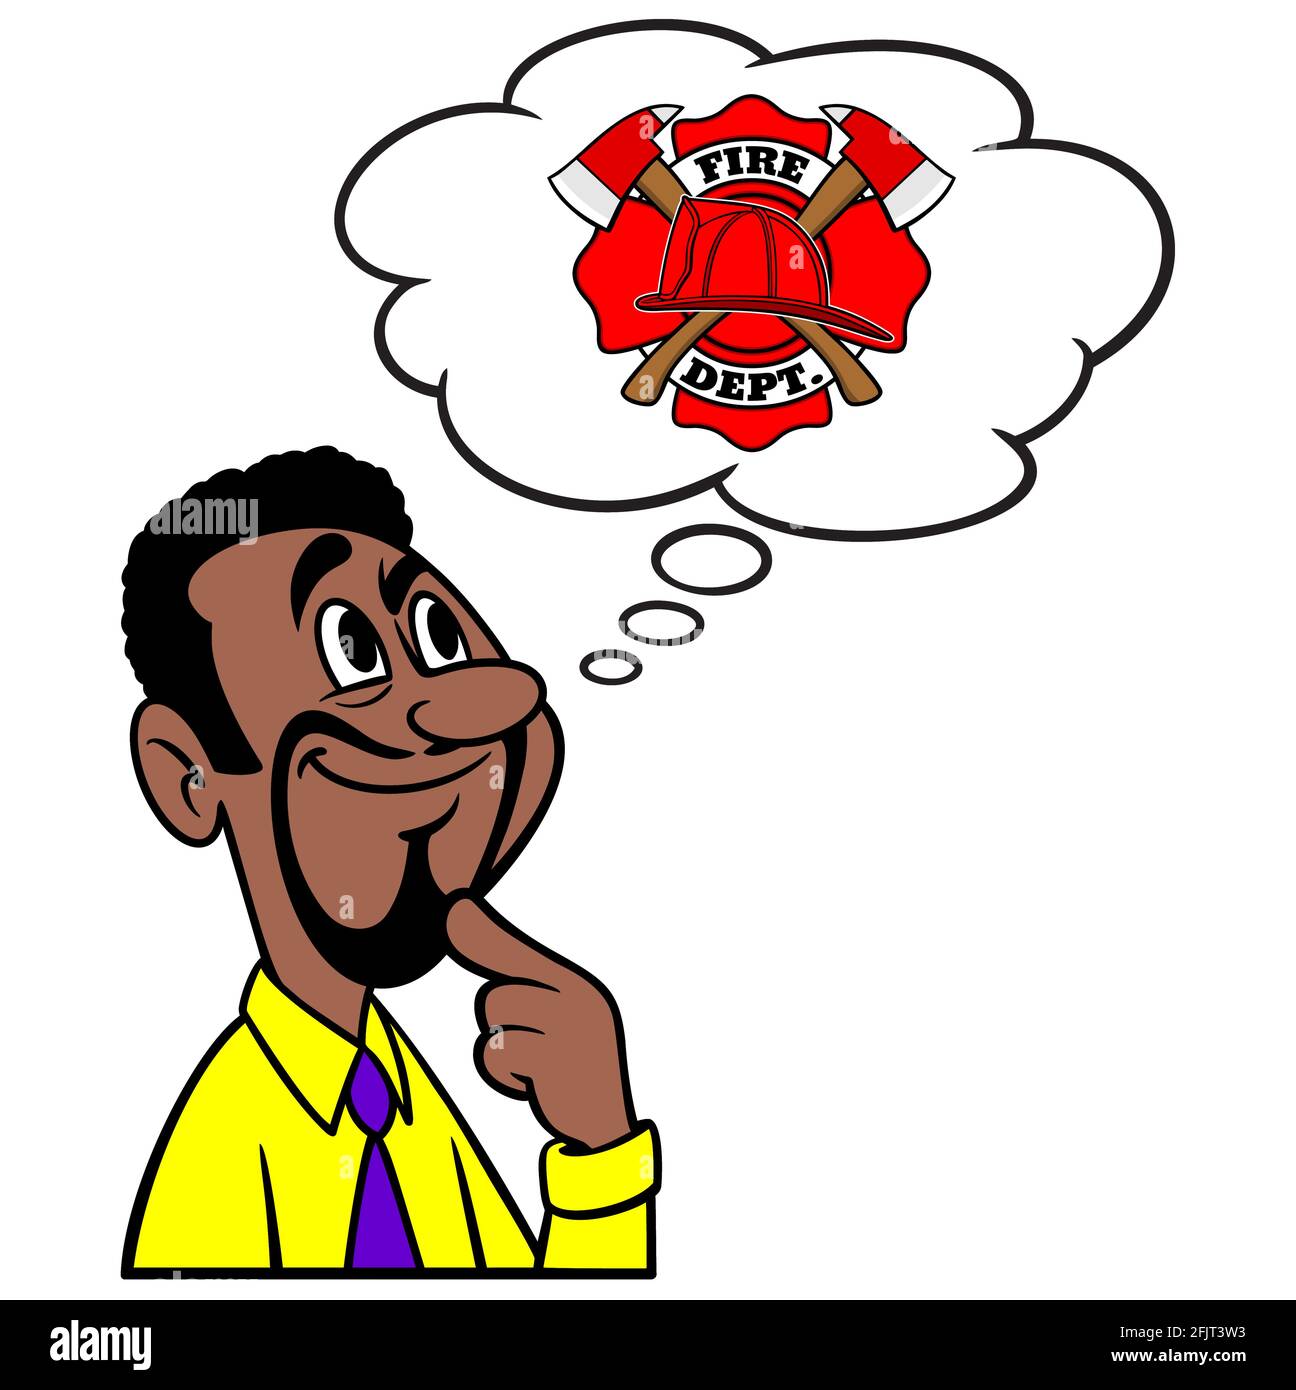 Mann, der an die Feuerwehr denkt - EINE Cartoon-Illustration eines Mannes, der an die örtliche Feuerwehr denkt. Stock Vektor